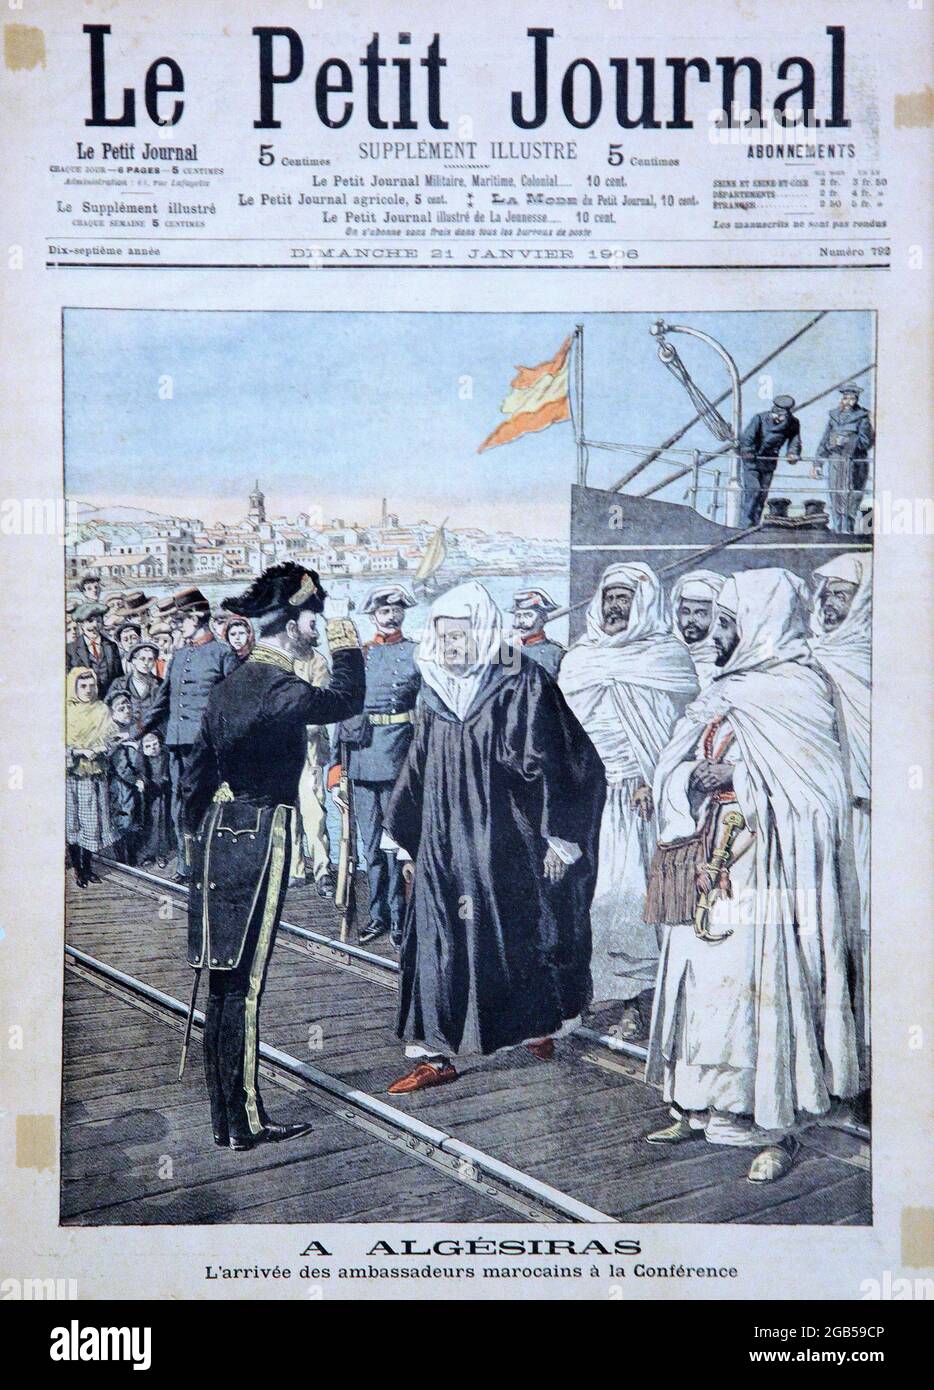 Le Petit Journal,dimanche 21 janvier 1906;L'arrivée des ambassadeurs marocains á la conférence a Algésiras.(conferencia internacional sobre marruecos) Stock Photo